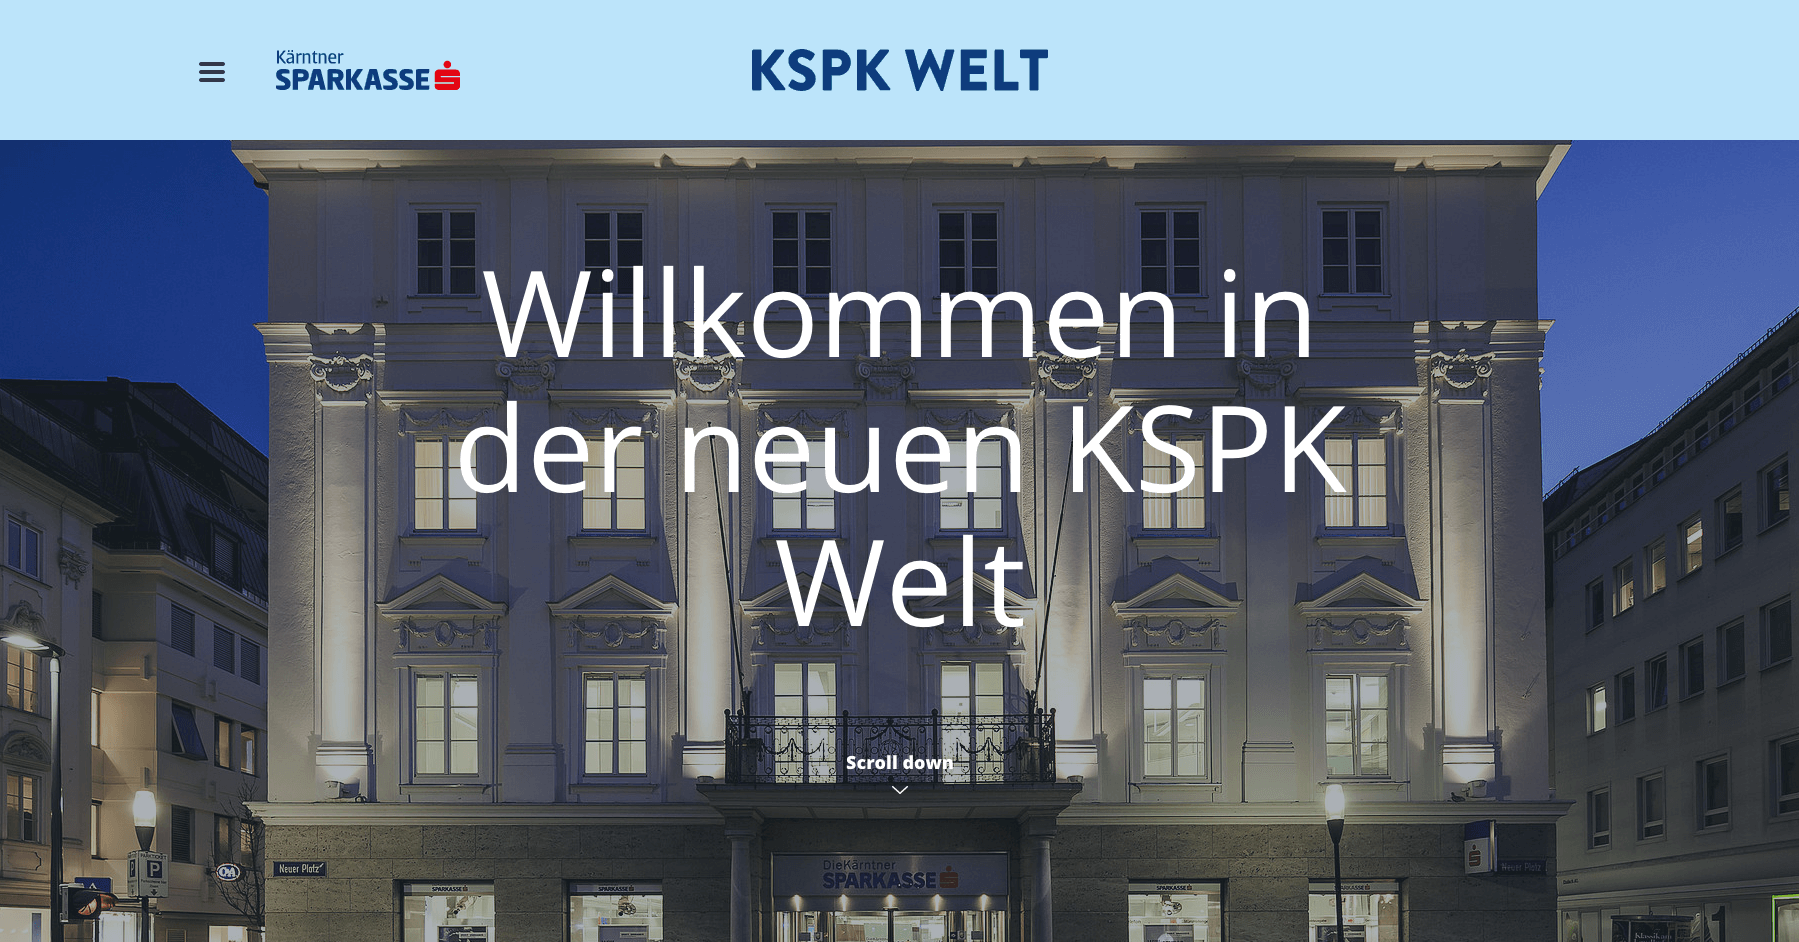 (c) Kspk-welt.at